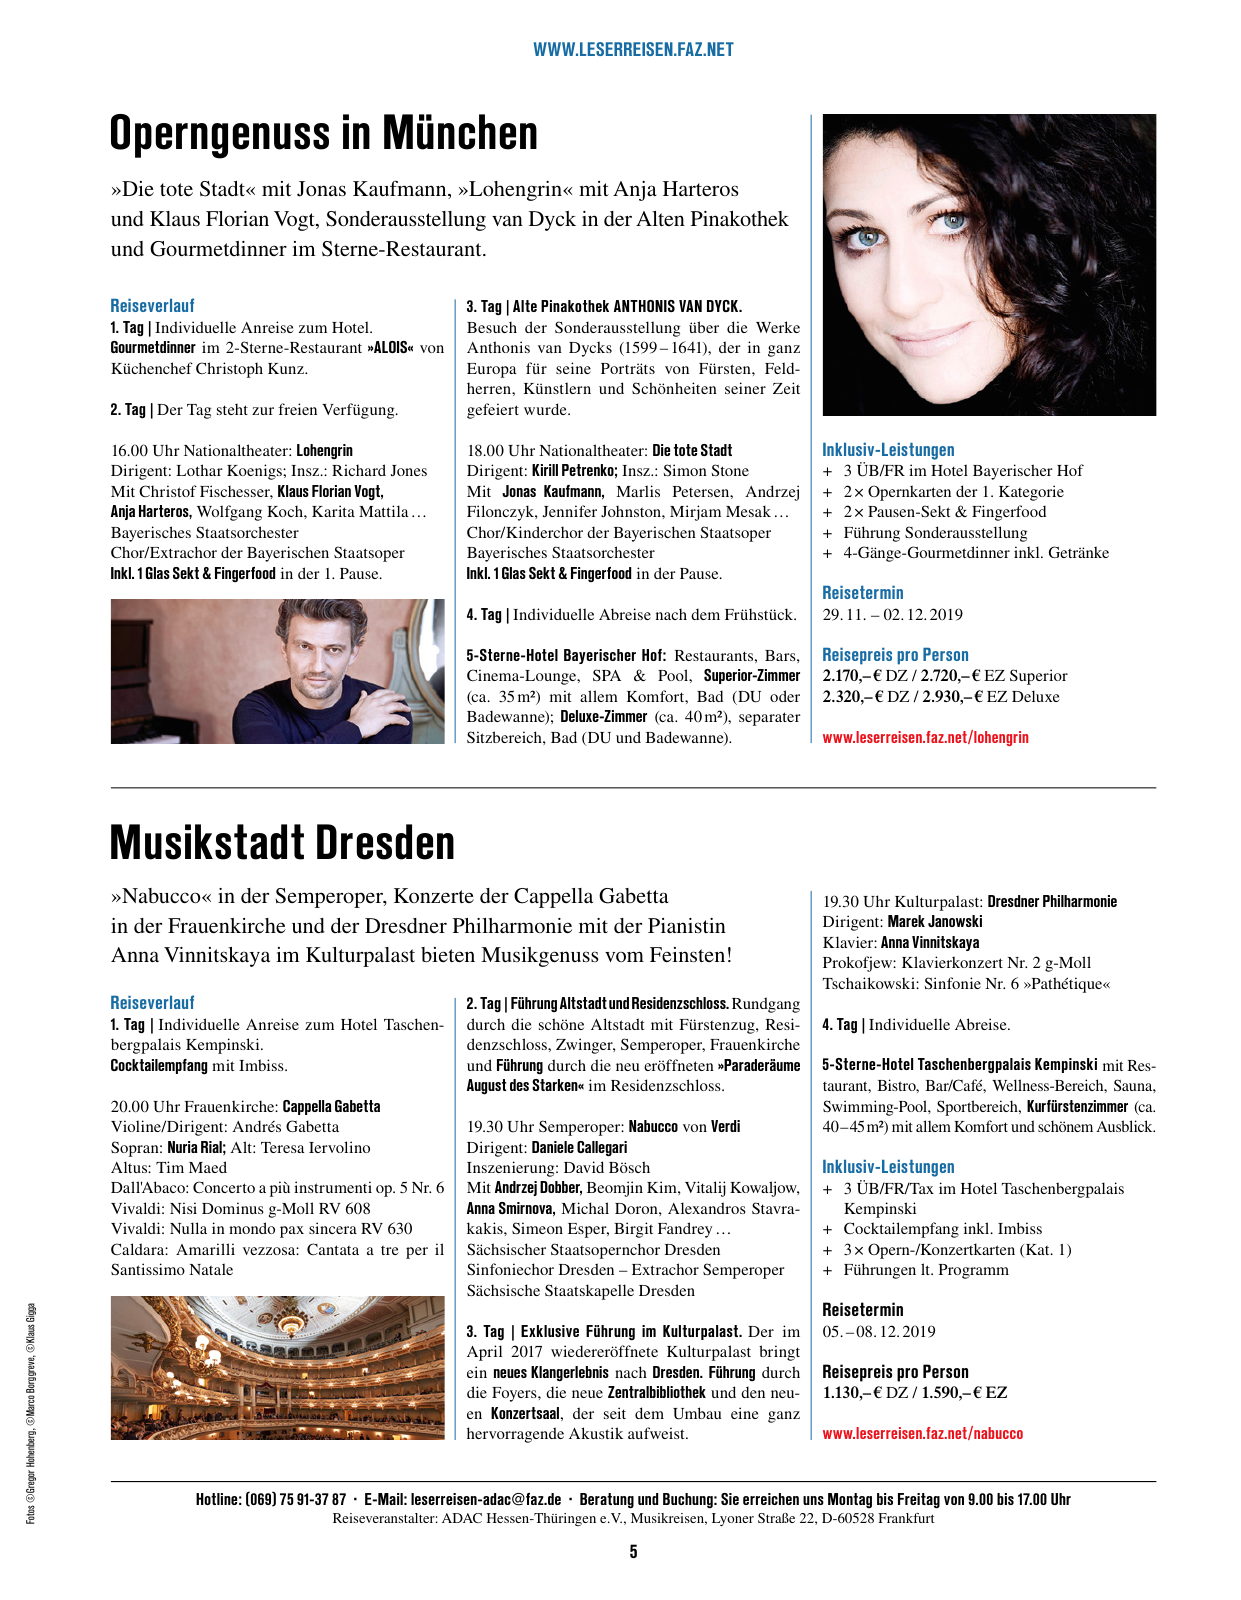 Vorschau F.A.Z. Leserreisen Katalog Musik,- Städte- und Eventreisen Seite 5